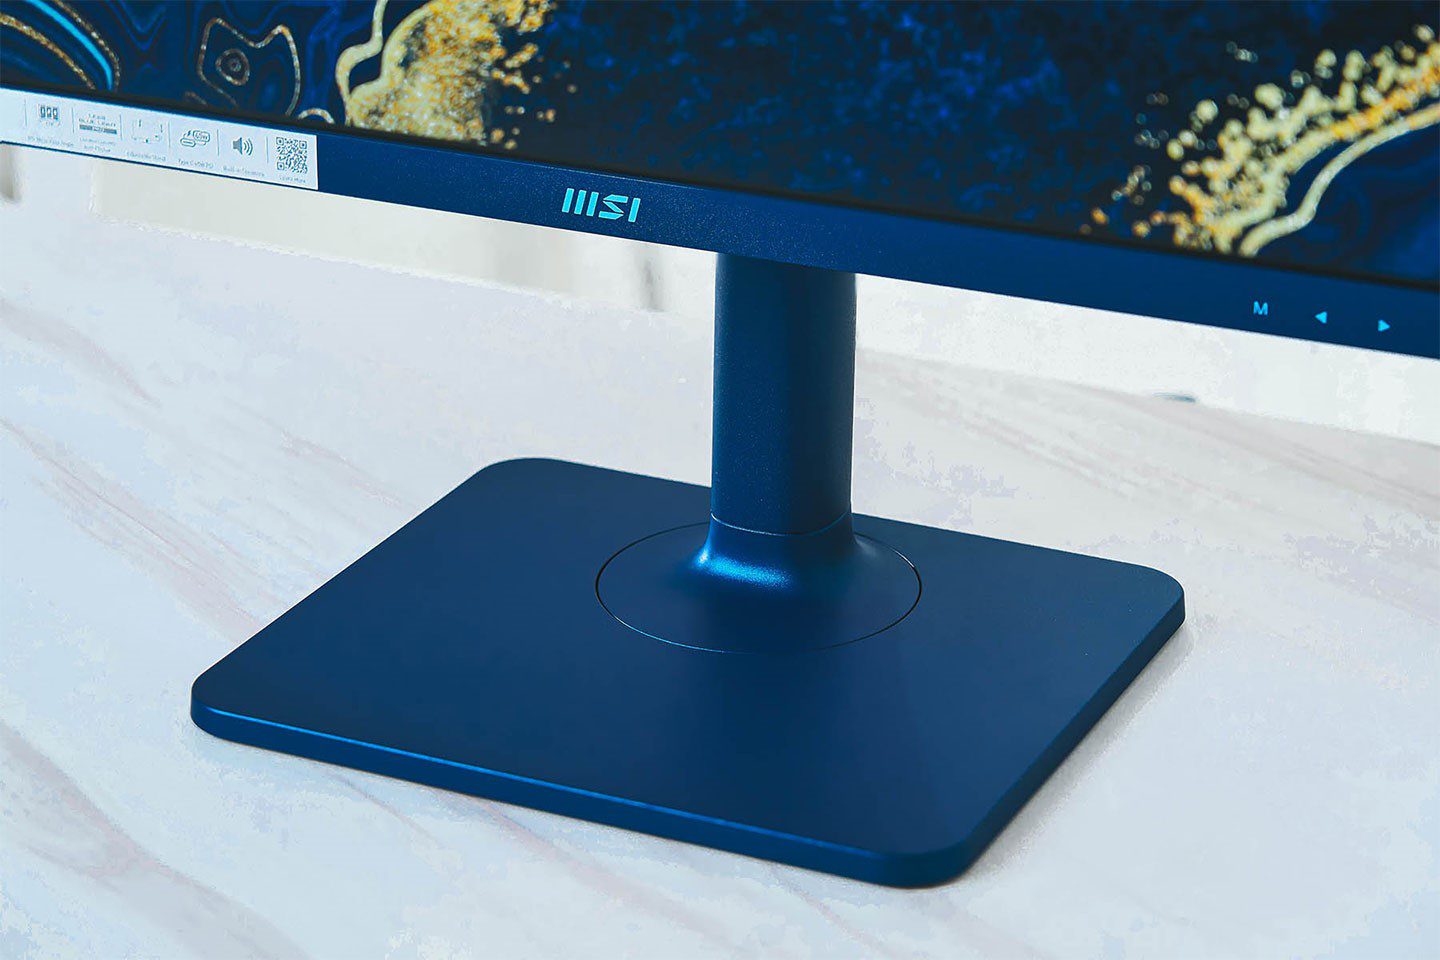 方型 底座 設計 讓 大 尺寸 顯示器 也能穩固 地 置放 於 桌面 ， 同時 提 supplier 可 左右 旋轉 視角的功能。